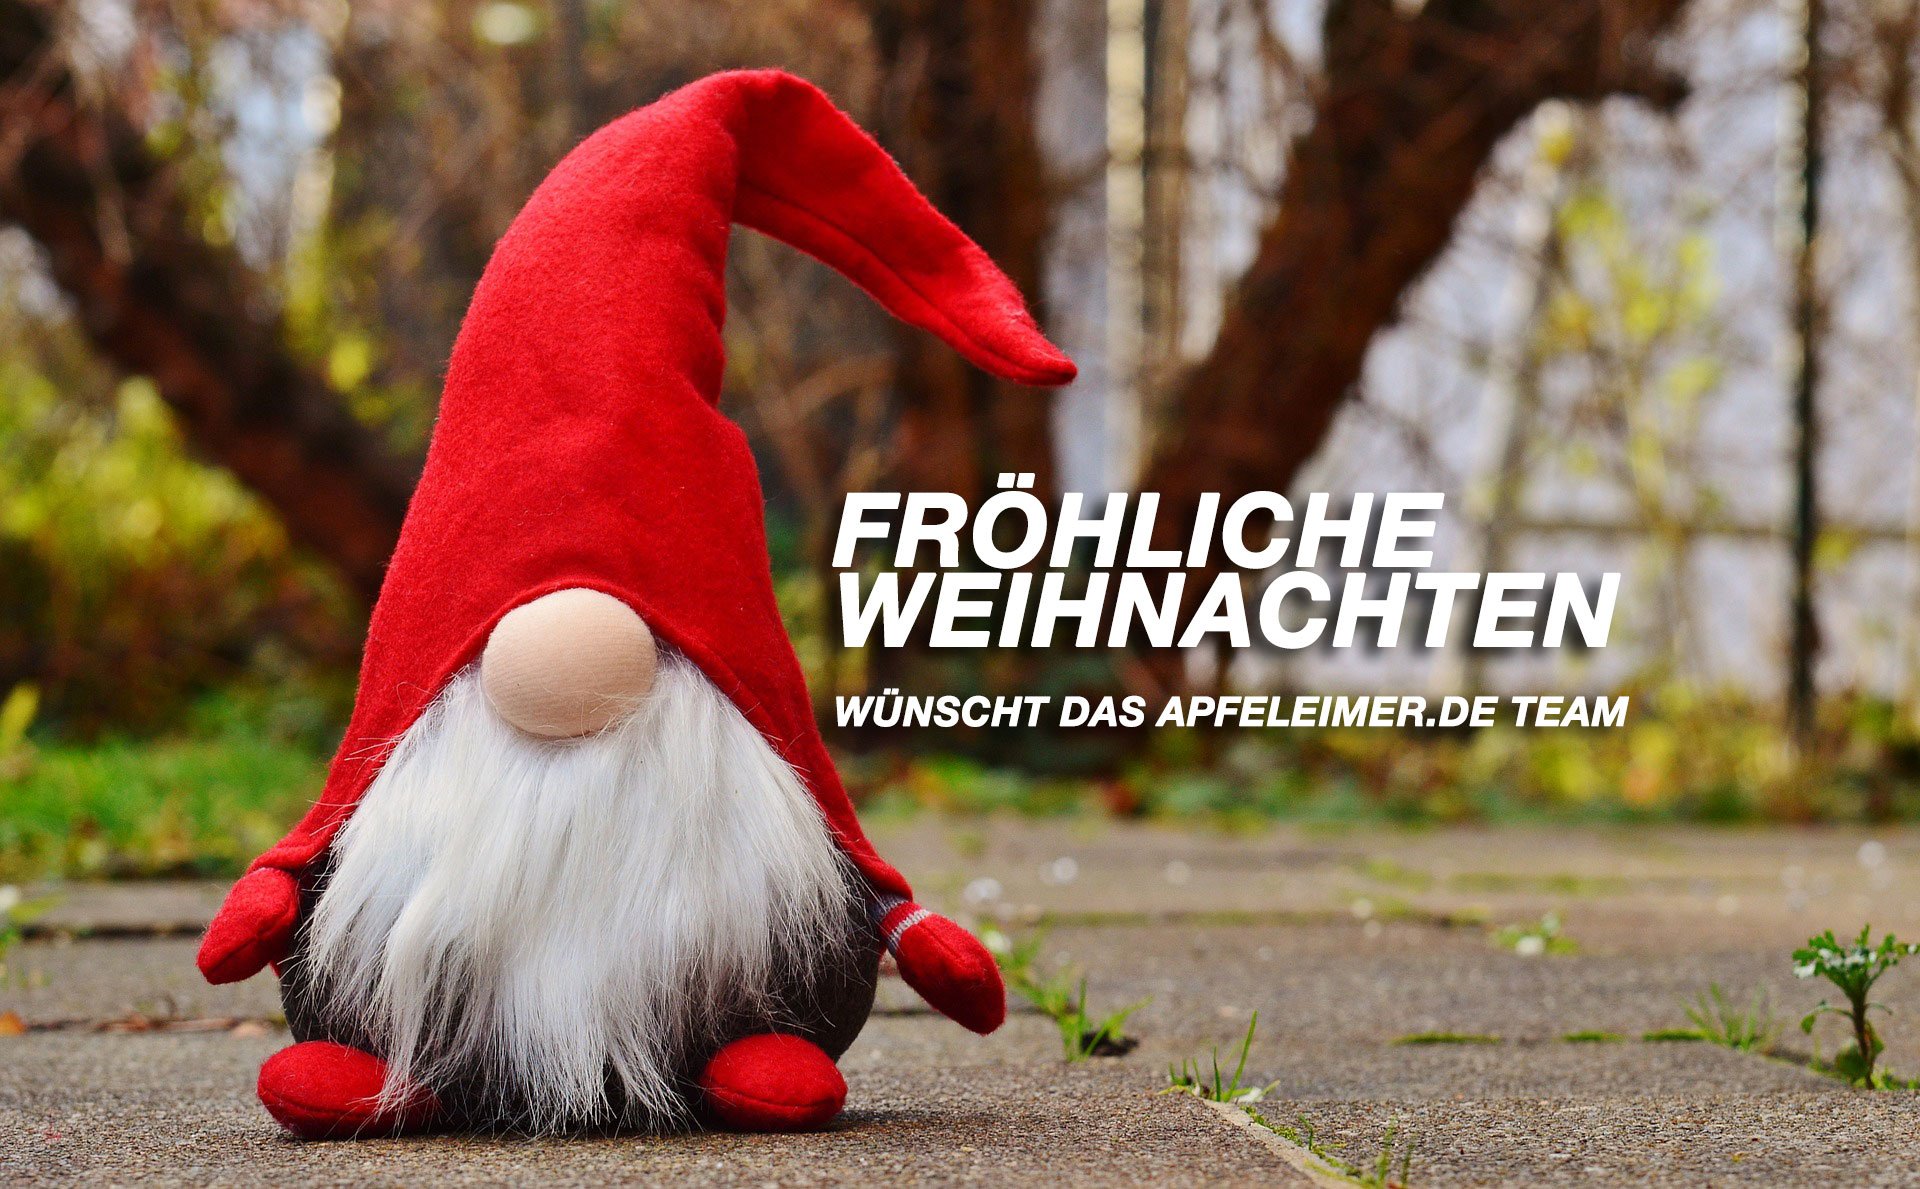 Frohe Weihnachten 2015 wünscht apfeleimer.de 1